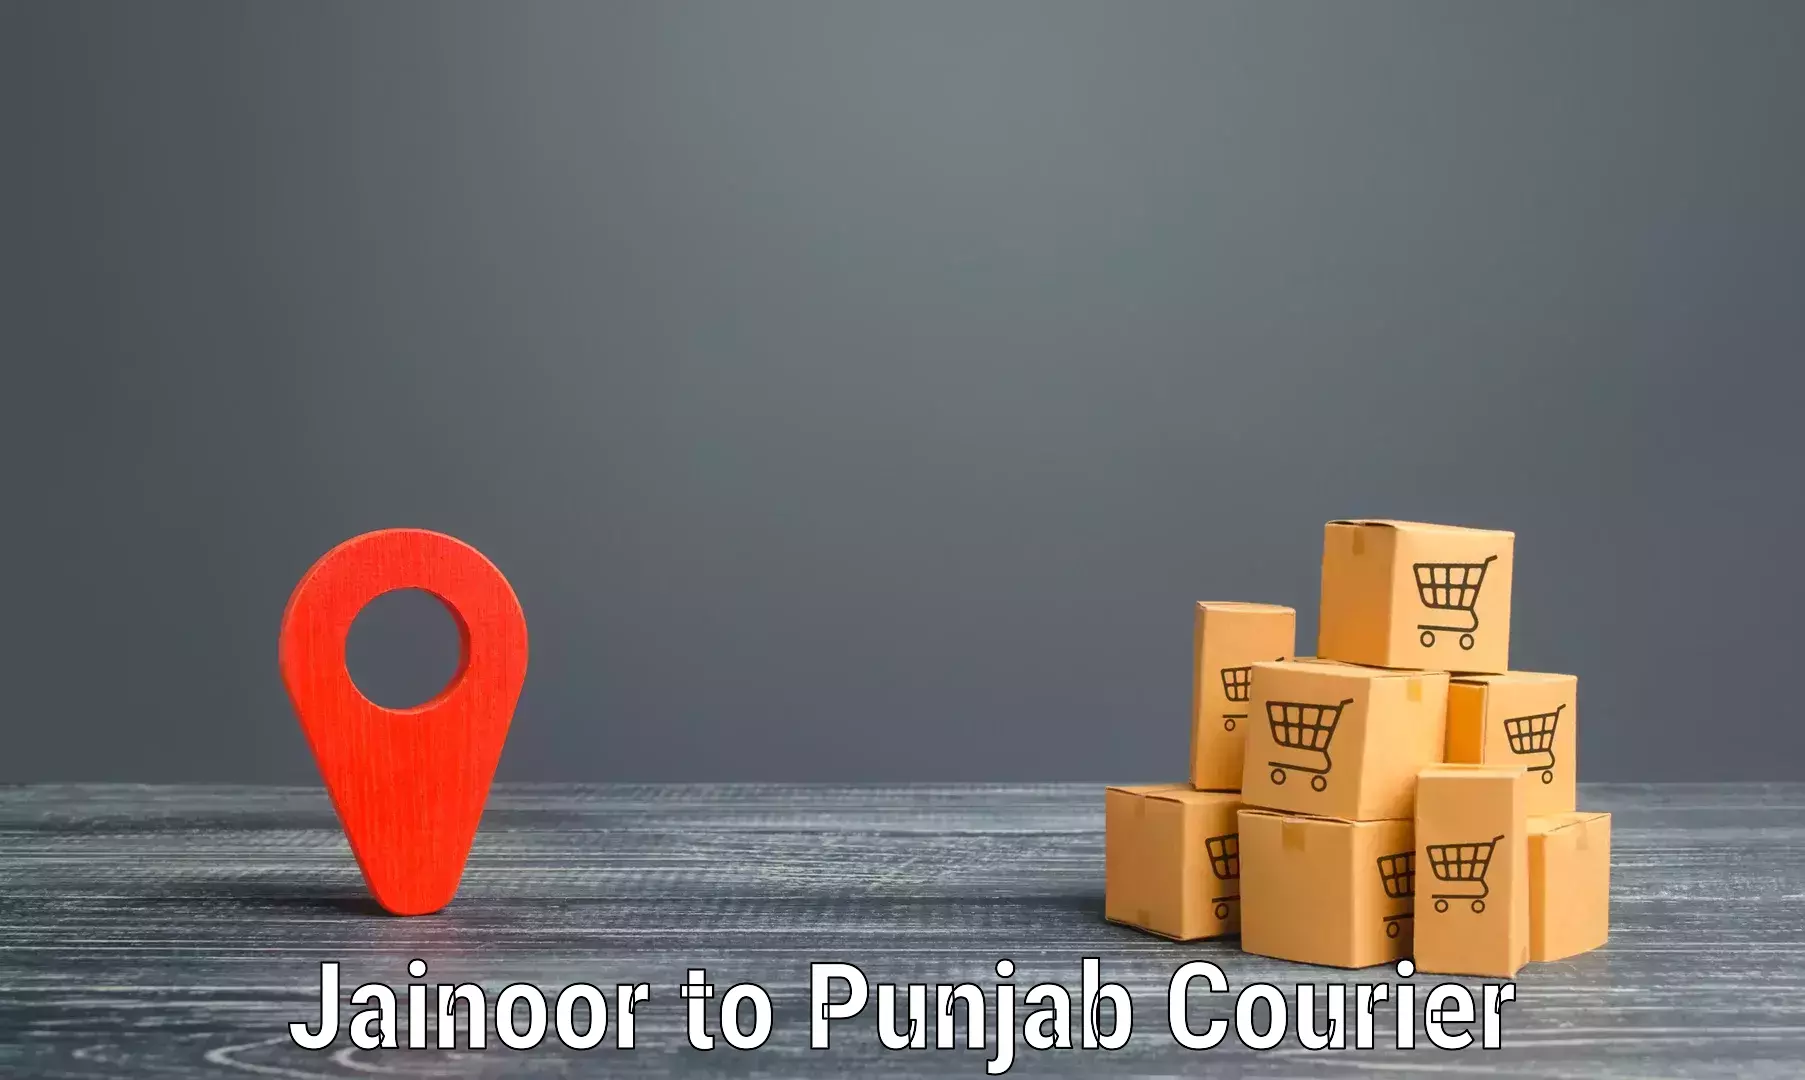 Efficient parcel service Jainoor to Ludhiana